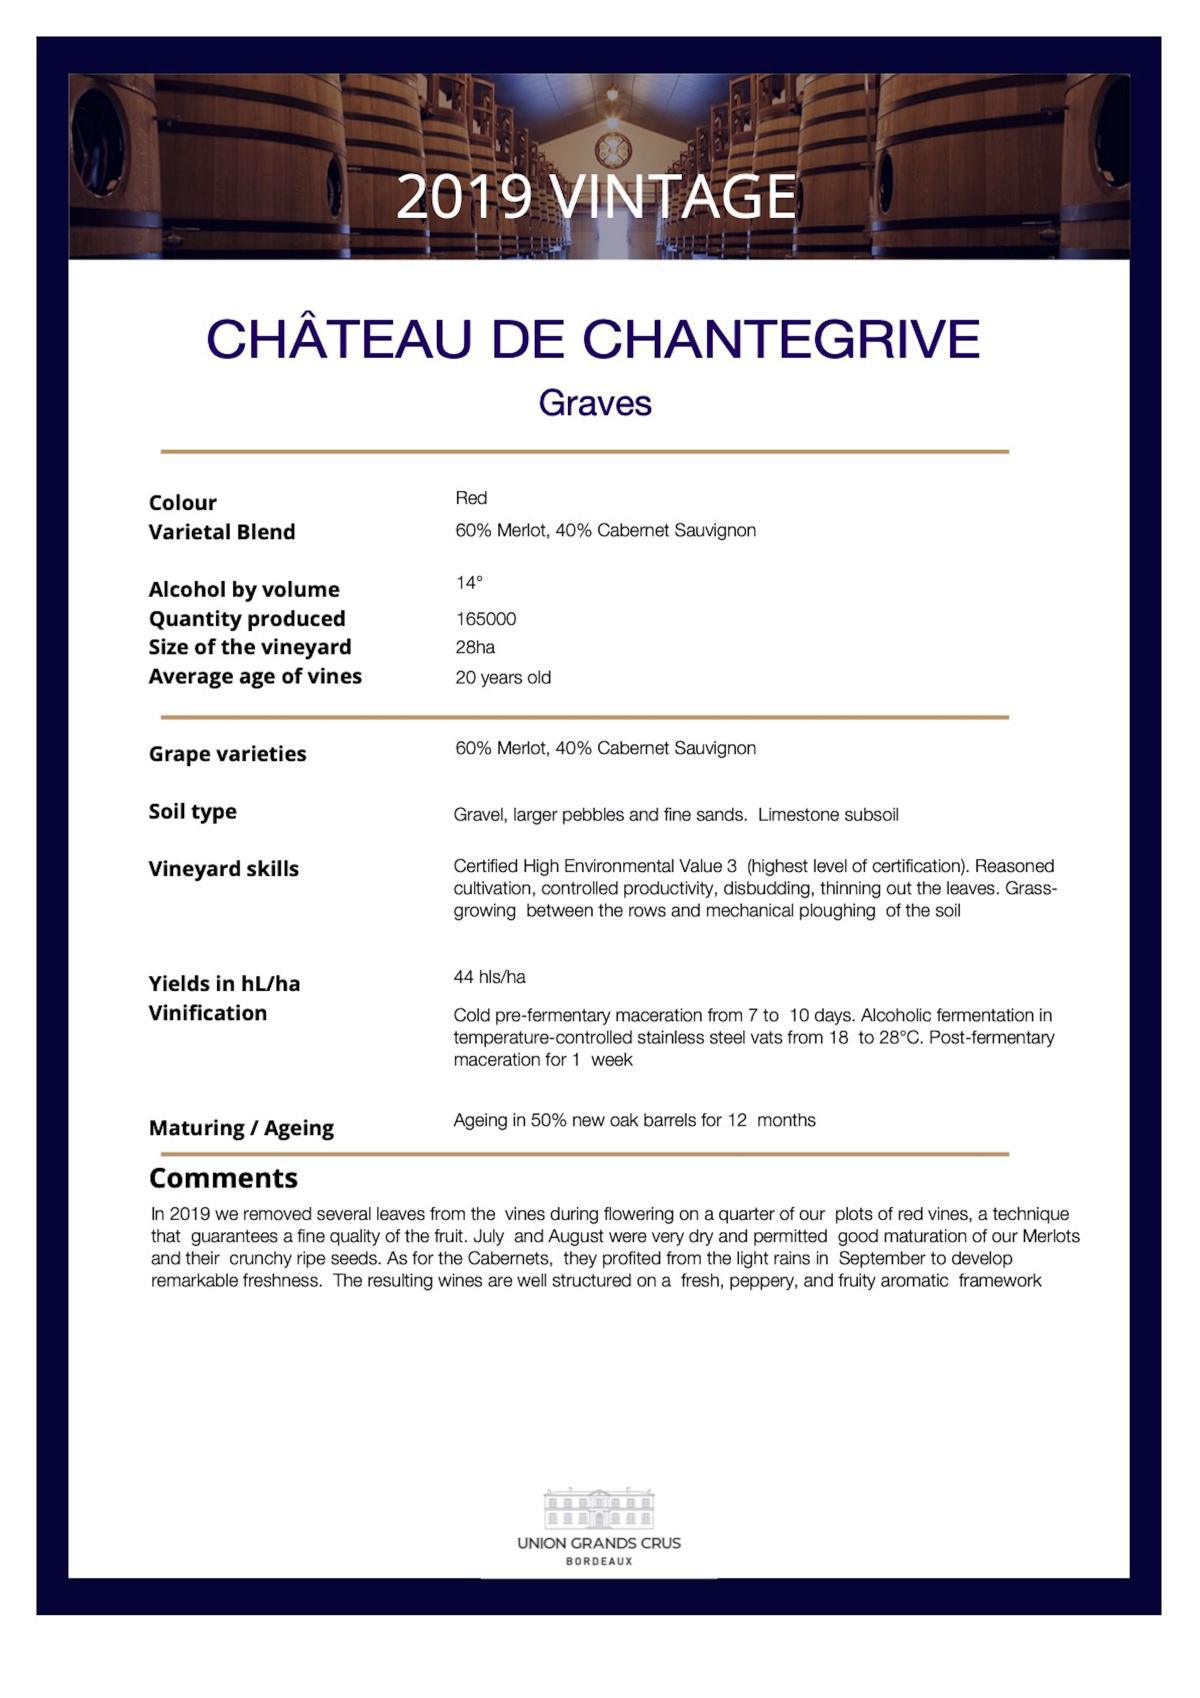 Château de Chantegrive - Red